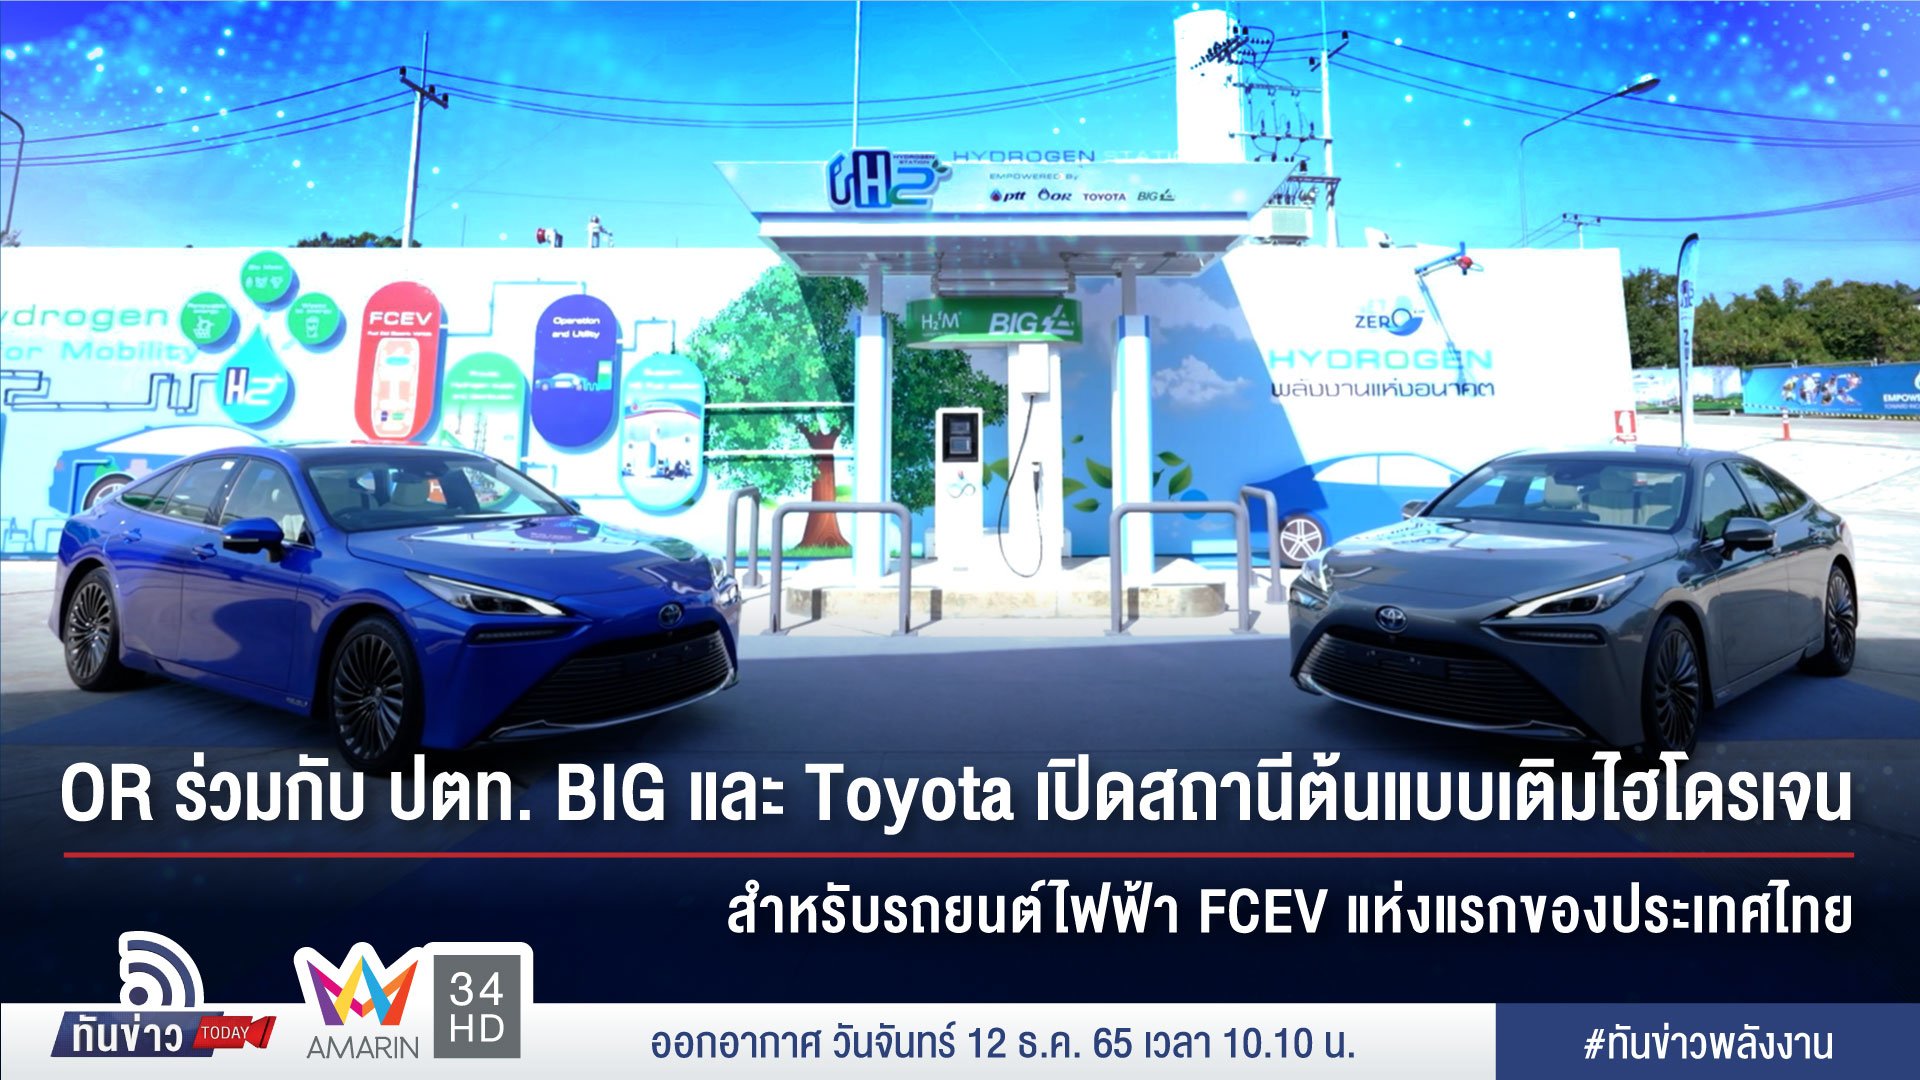 OR ร่วมกับ ปตท. BIG และ Toyota เปิดสถานีต้นแบบเติมไฮโดรเจนสำหรับรถยนต์ไฟฟ้า FCEV แห่งแรกของประเทศไทย